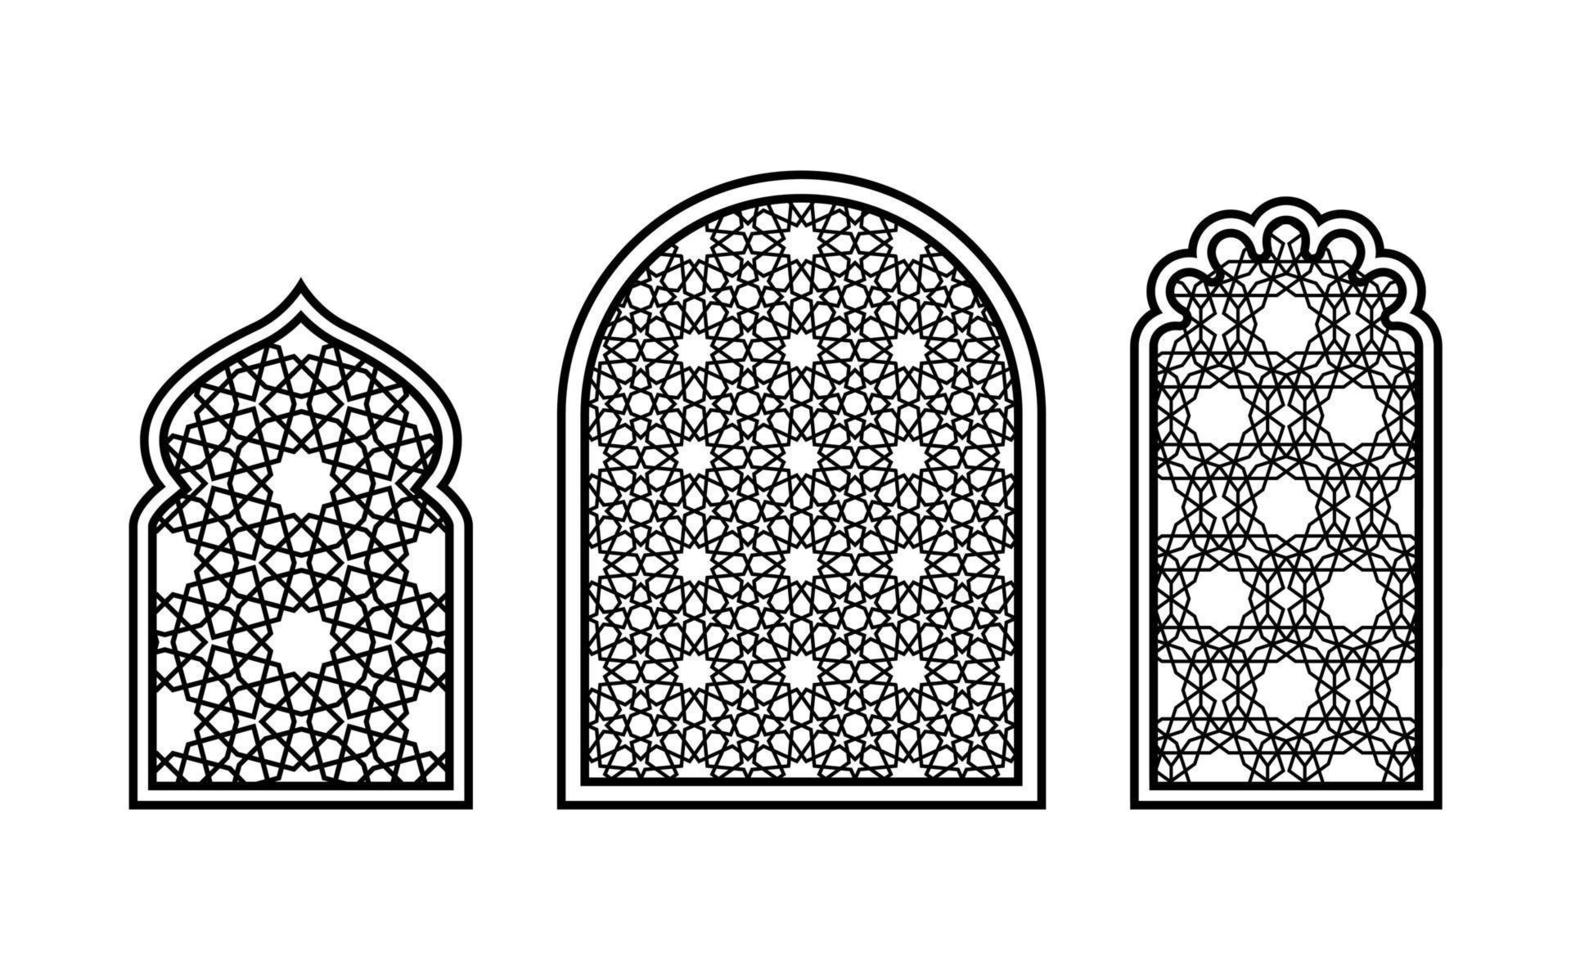 janelas de estilo oriental com padrões geométricos islâmicos tradicionais. silhuetas para esculpir em um fundo branco. ilustração vetorial. vetor